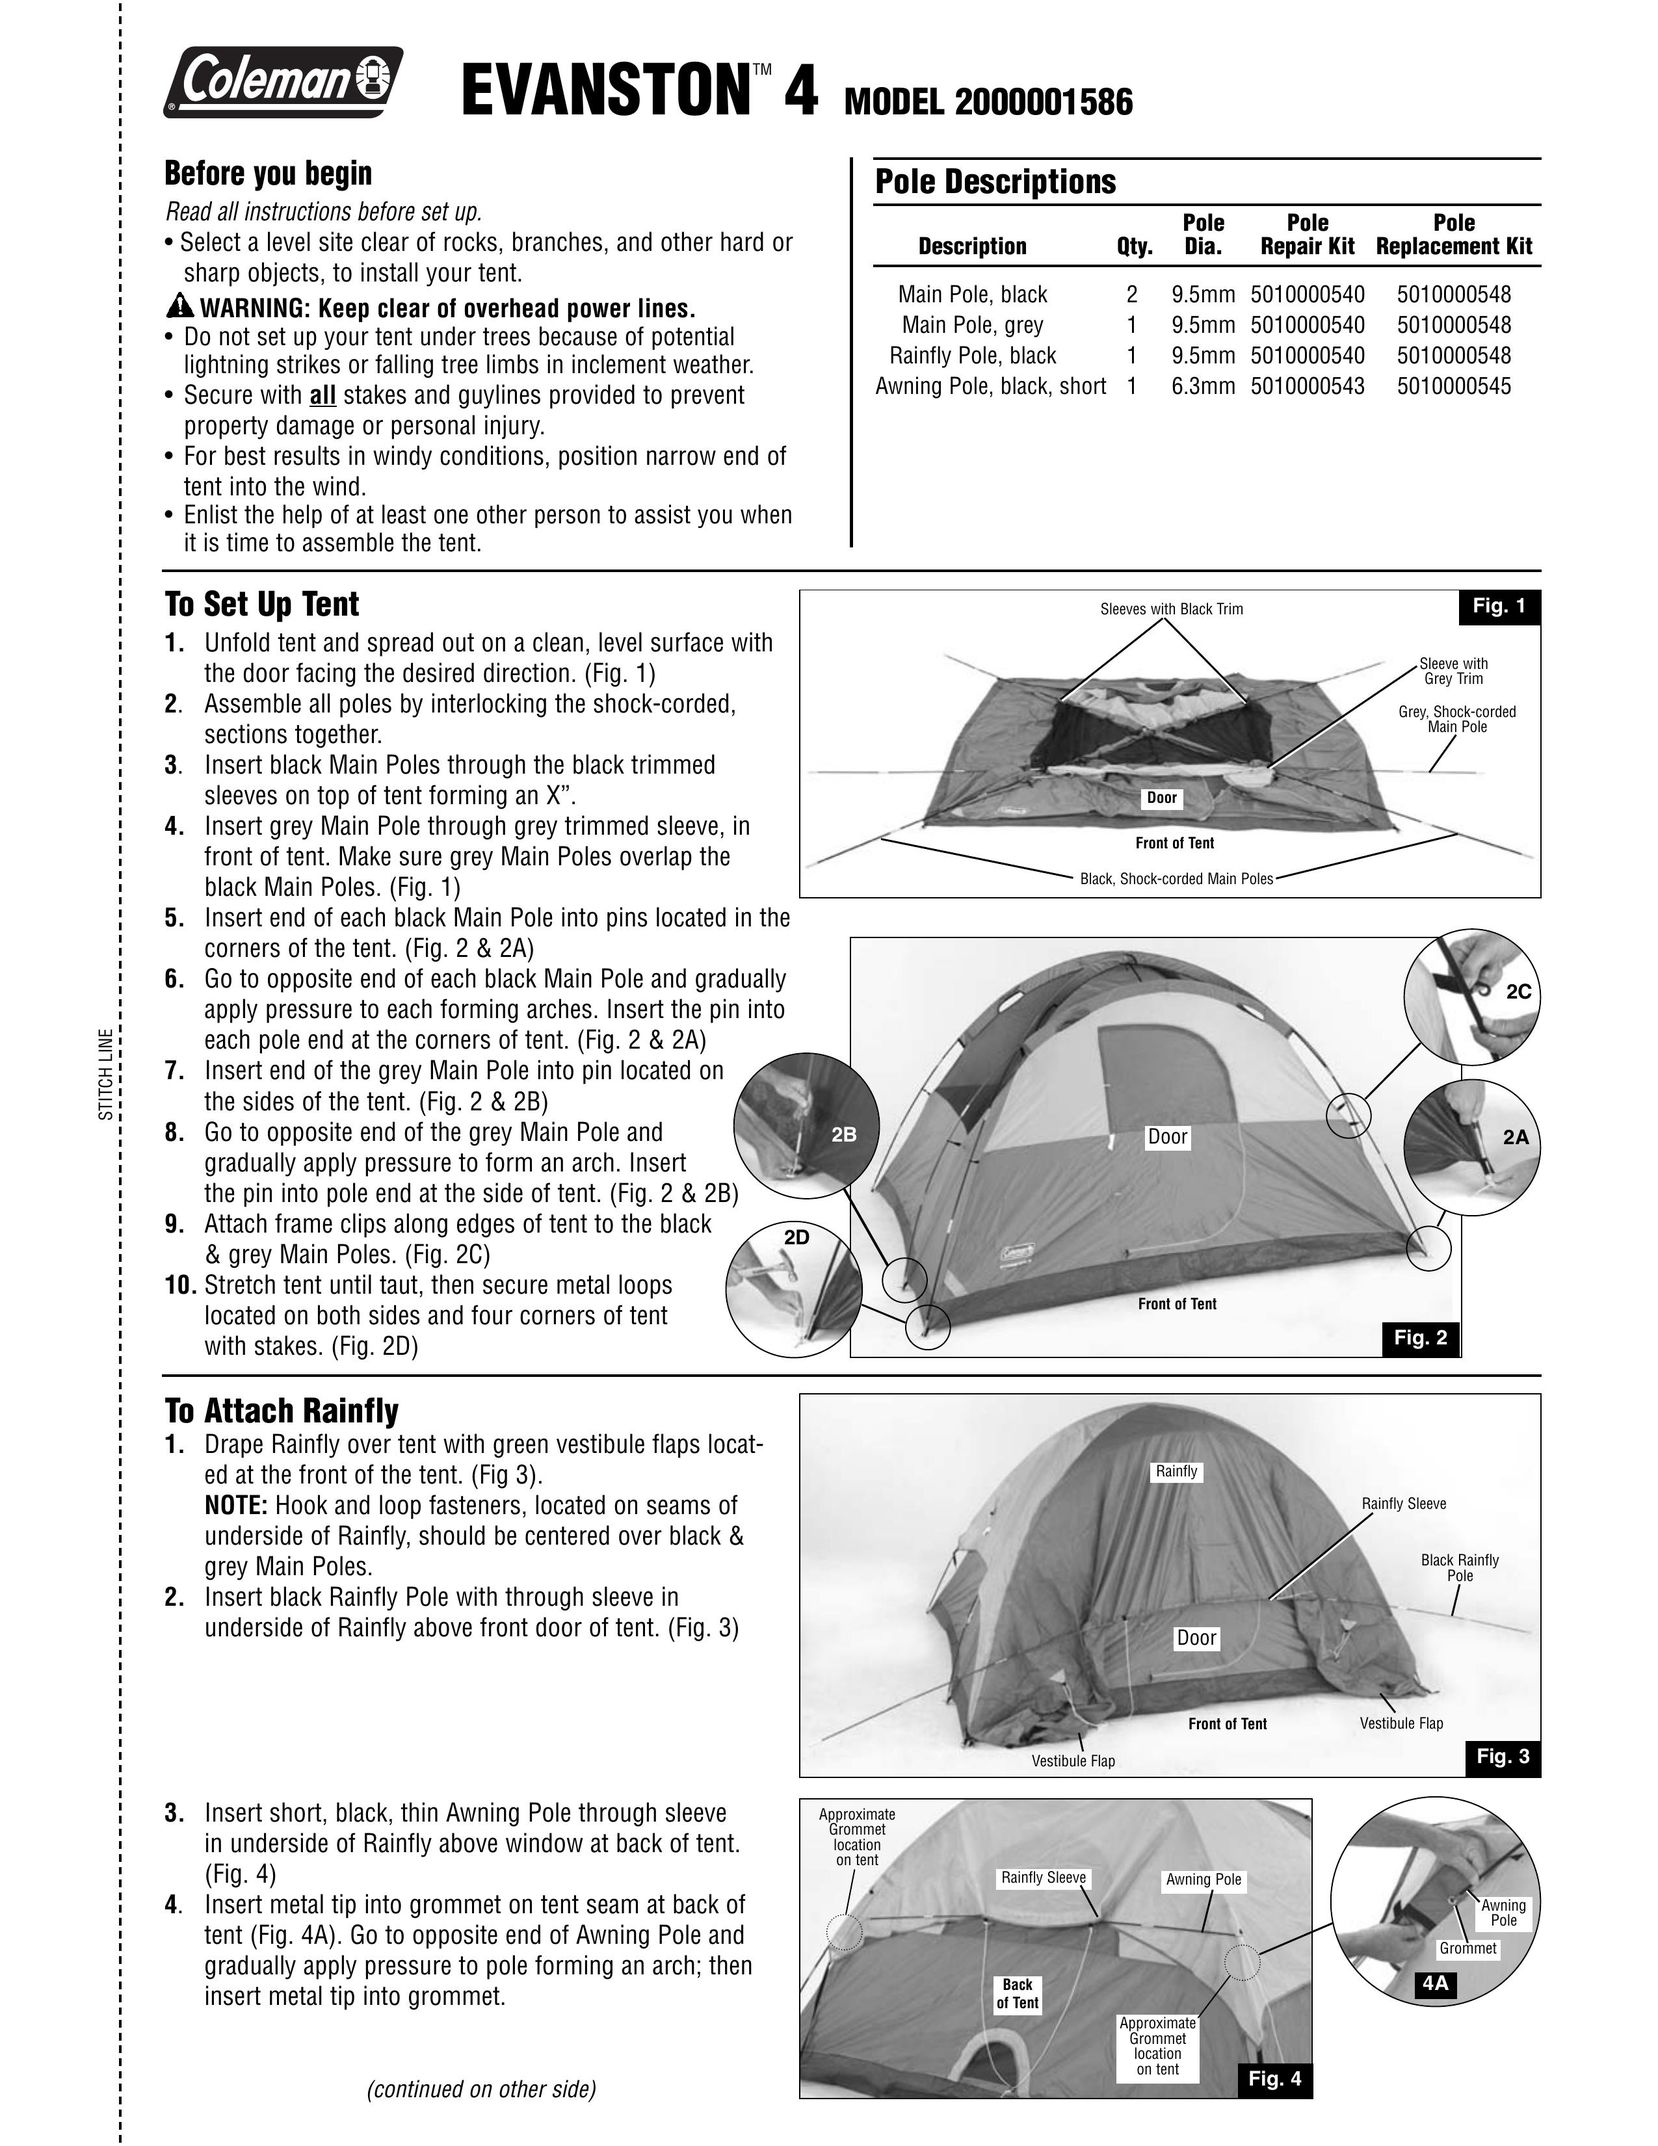 Coleman 2000001586 Tent User Manual